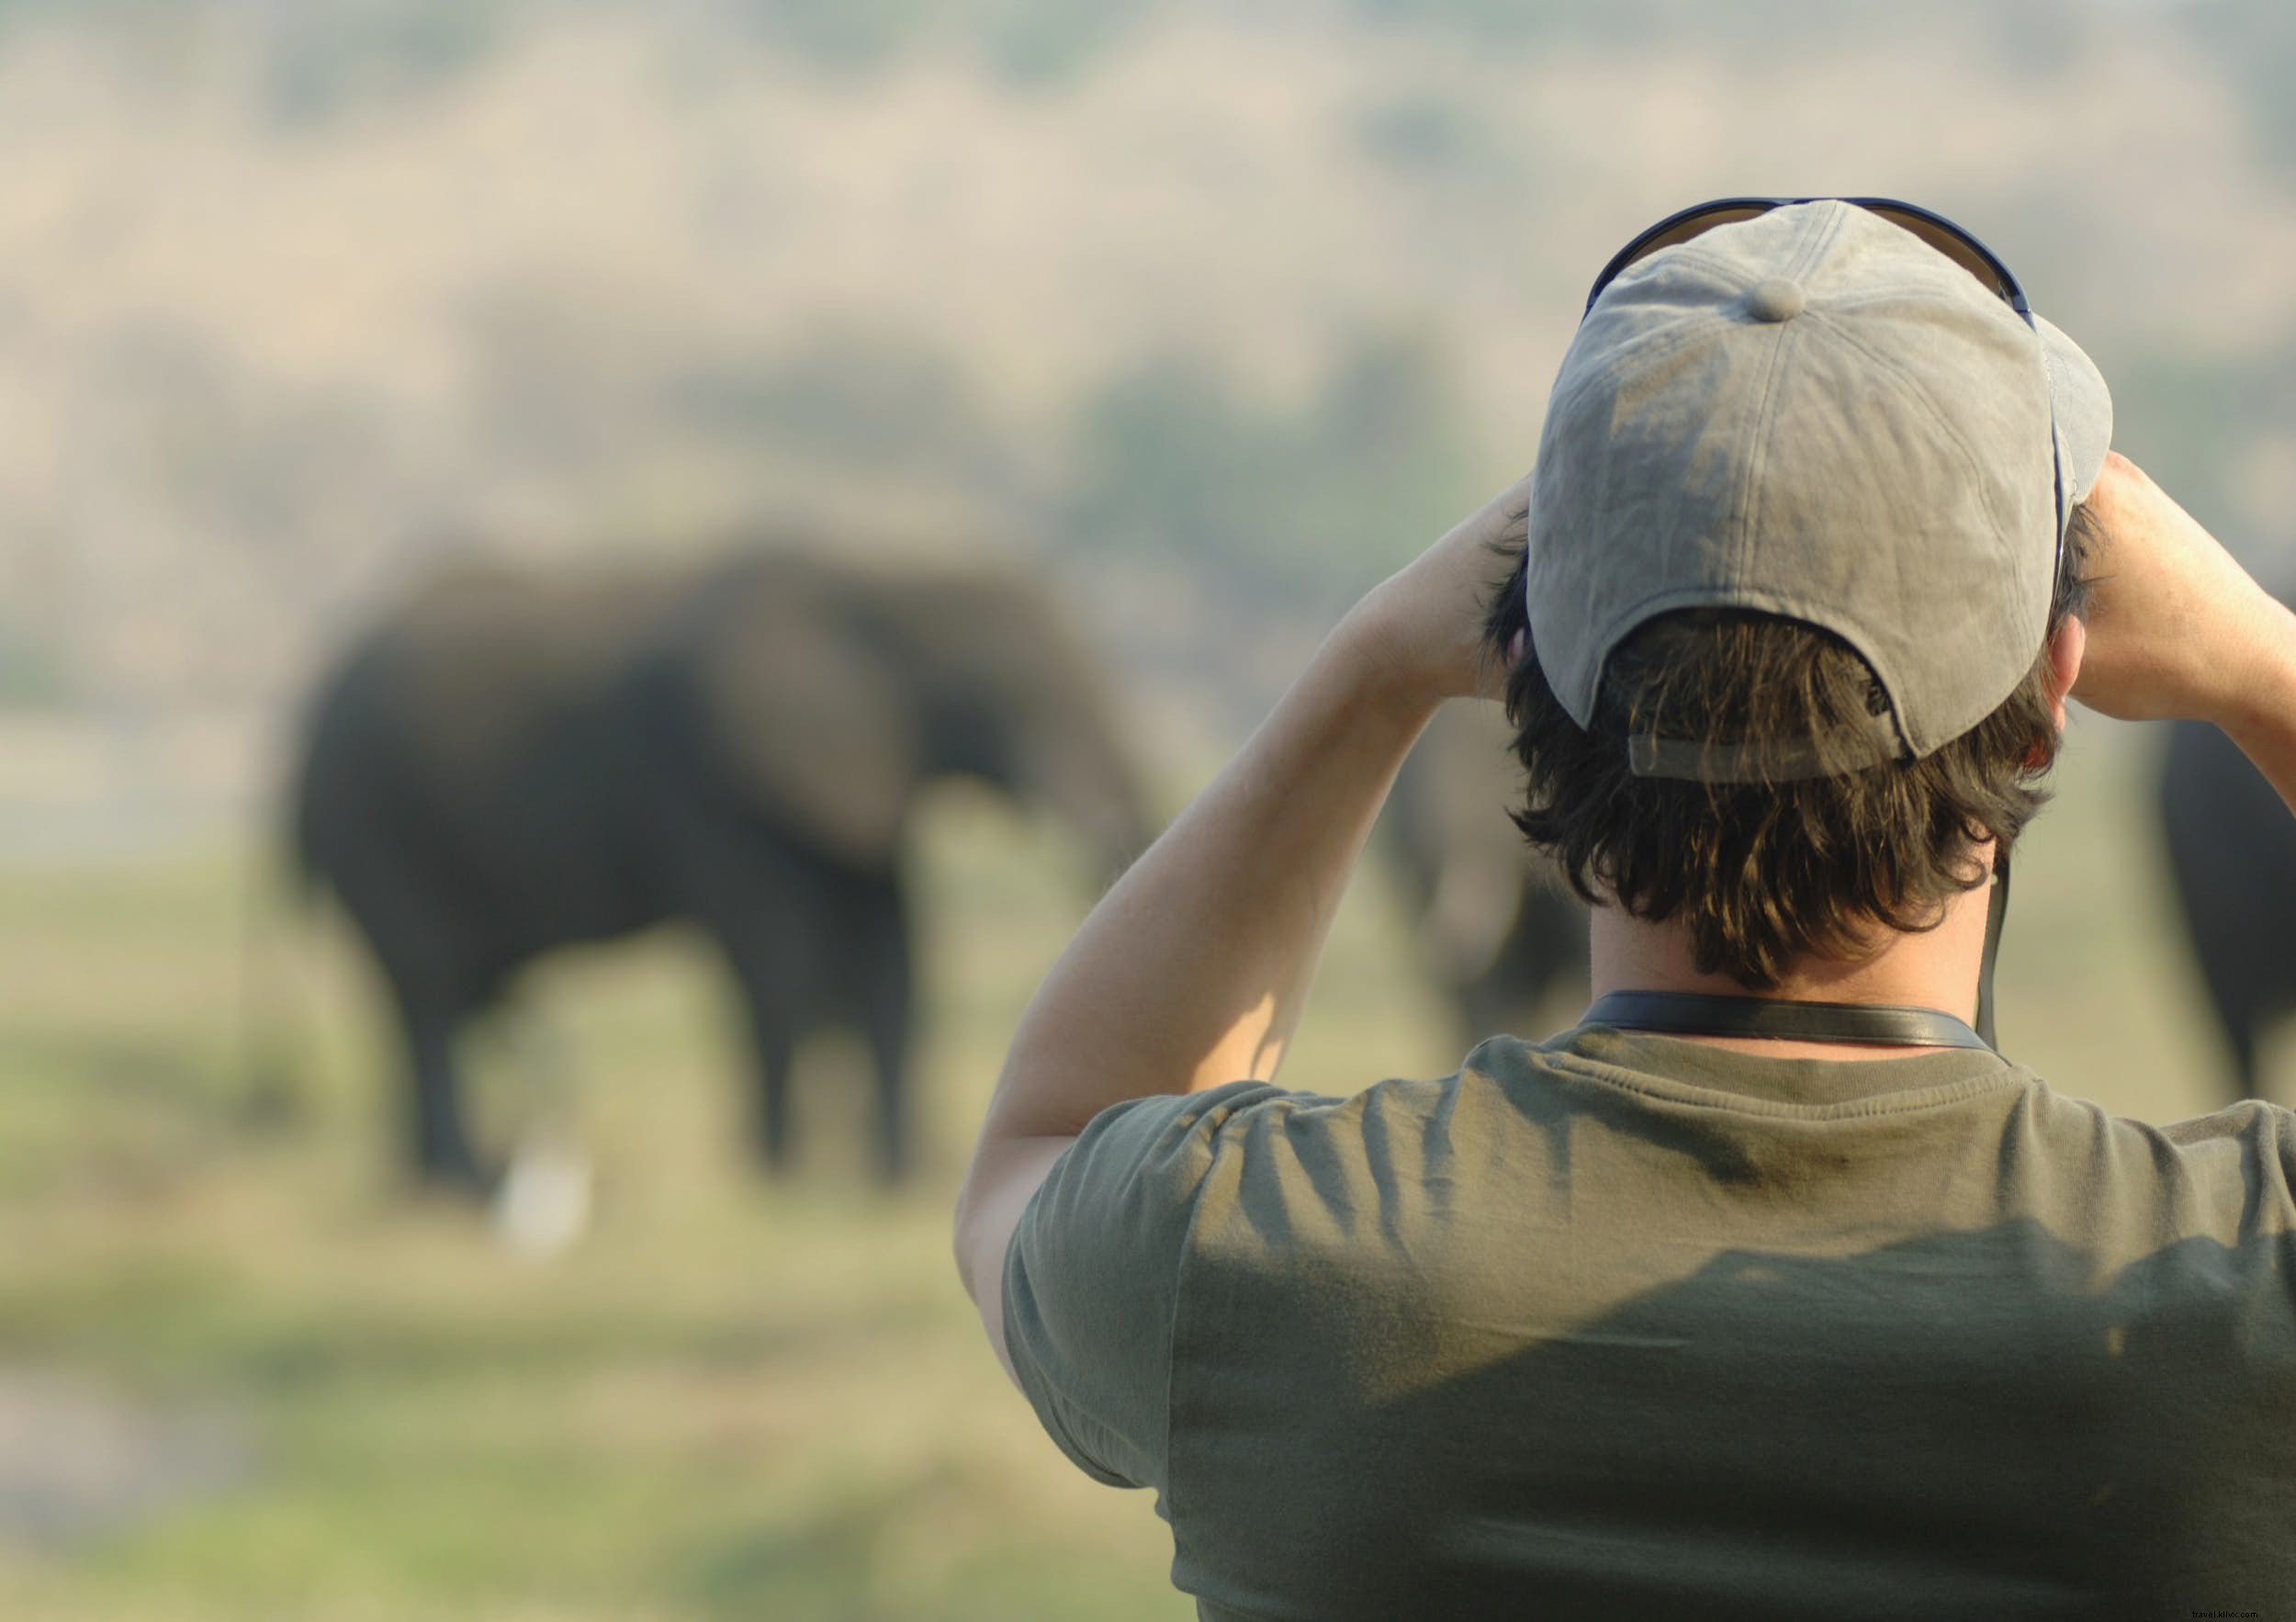 Animaux de safari :l histoire des éléphants (et les meilleurs endroits pour les voir) 